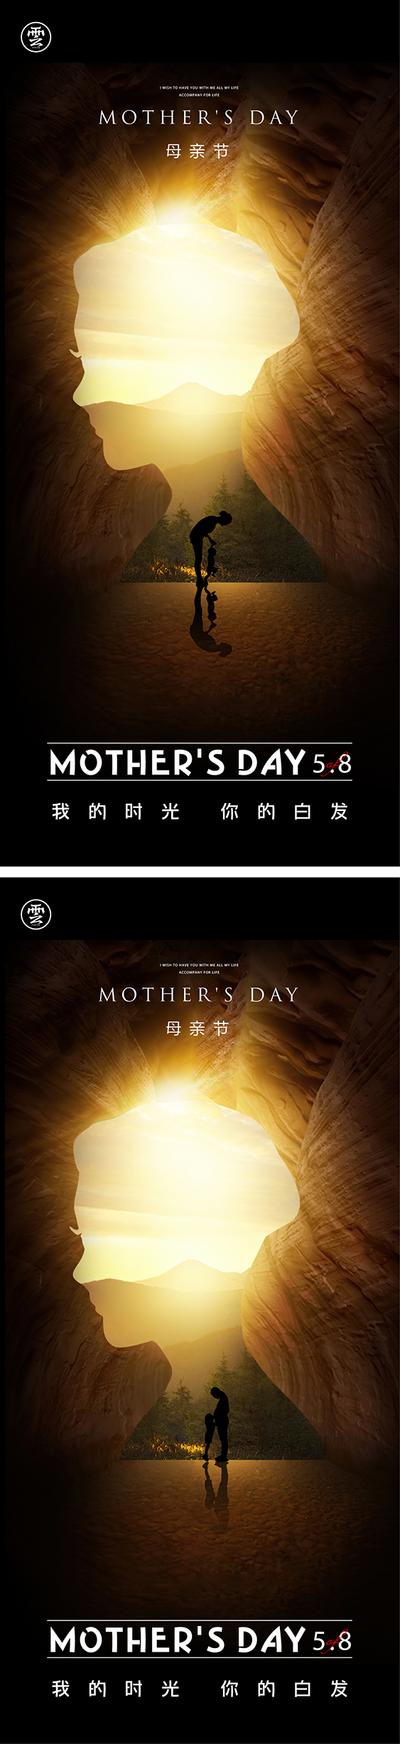 【南门网】广告 海报 节日 母亲节 系列 投影 光晕